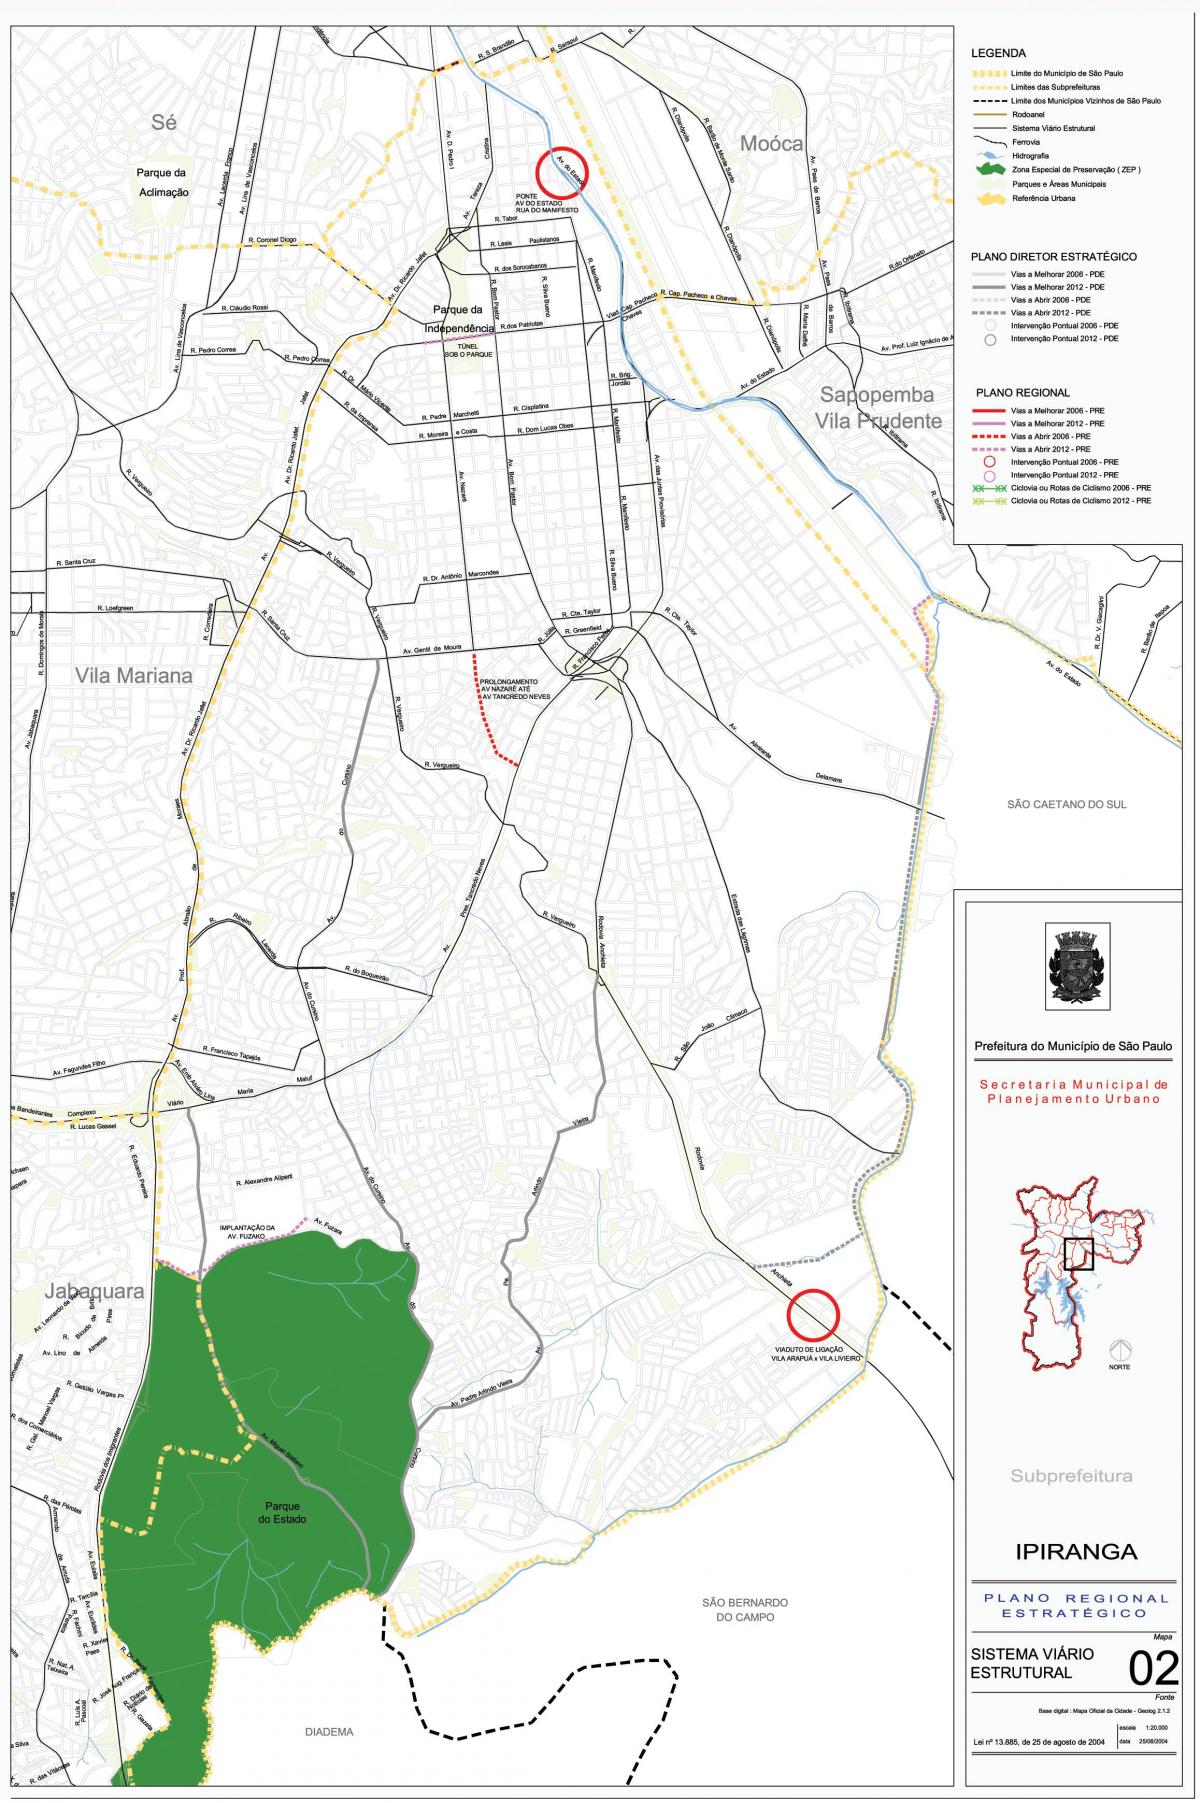 Map of Ipiranga São Paulo - Roads